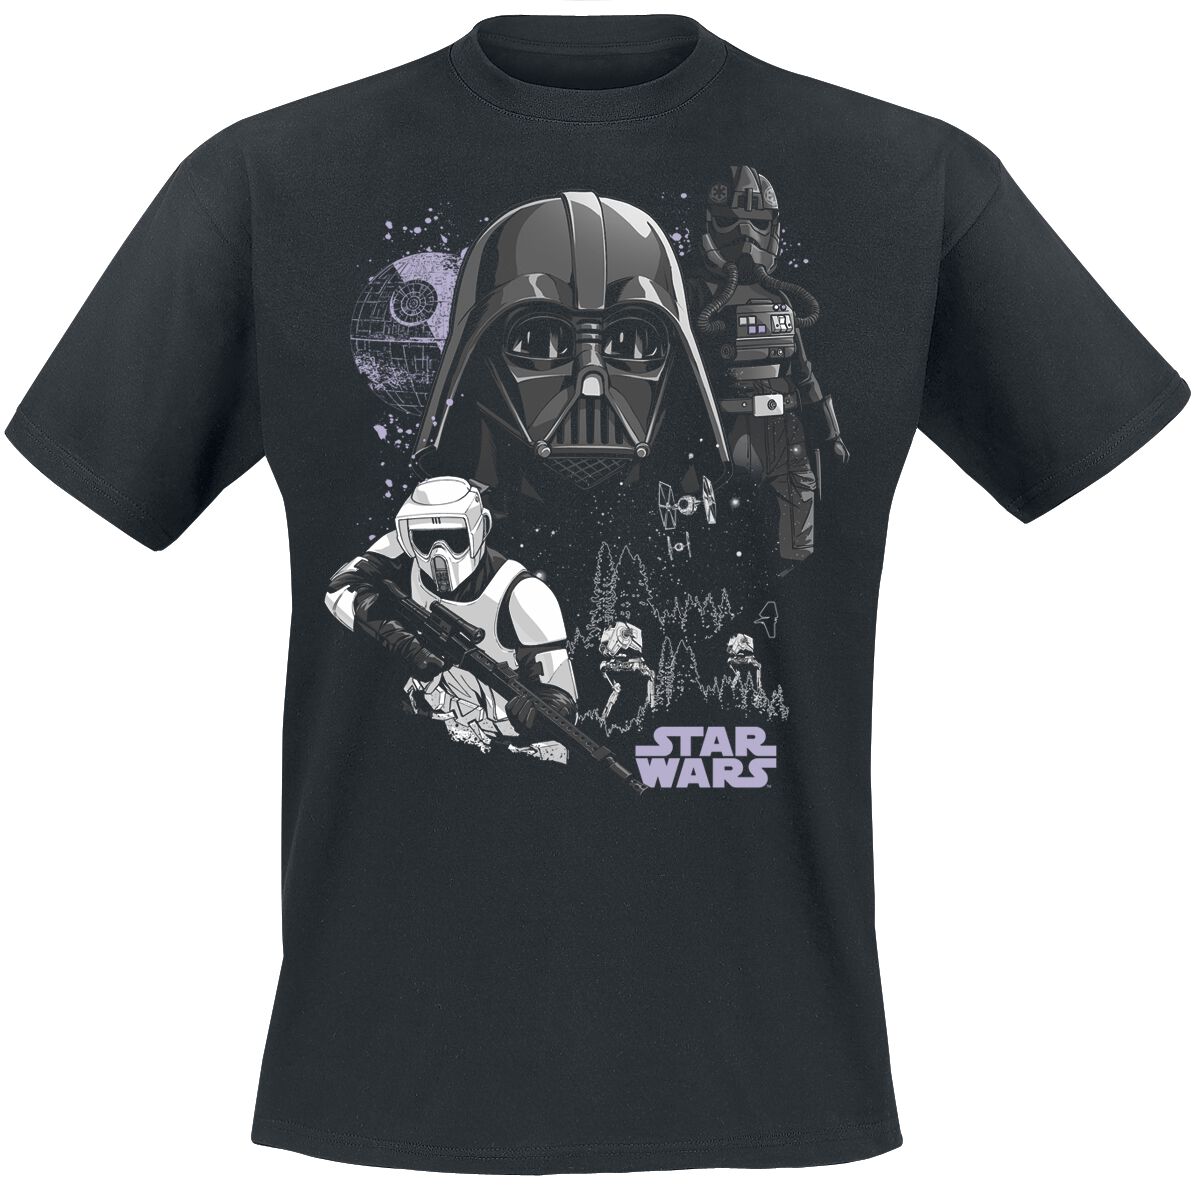 Star Wars T-Shirt - Battle Of Endor - S bis XXL - für Männer - Größe L - schwarz  - EMP exklusives Merchandise!